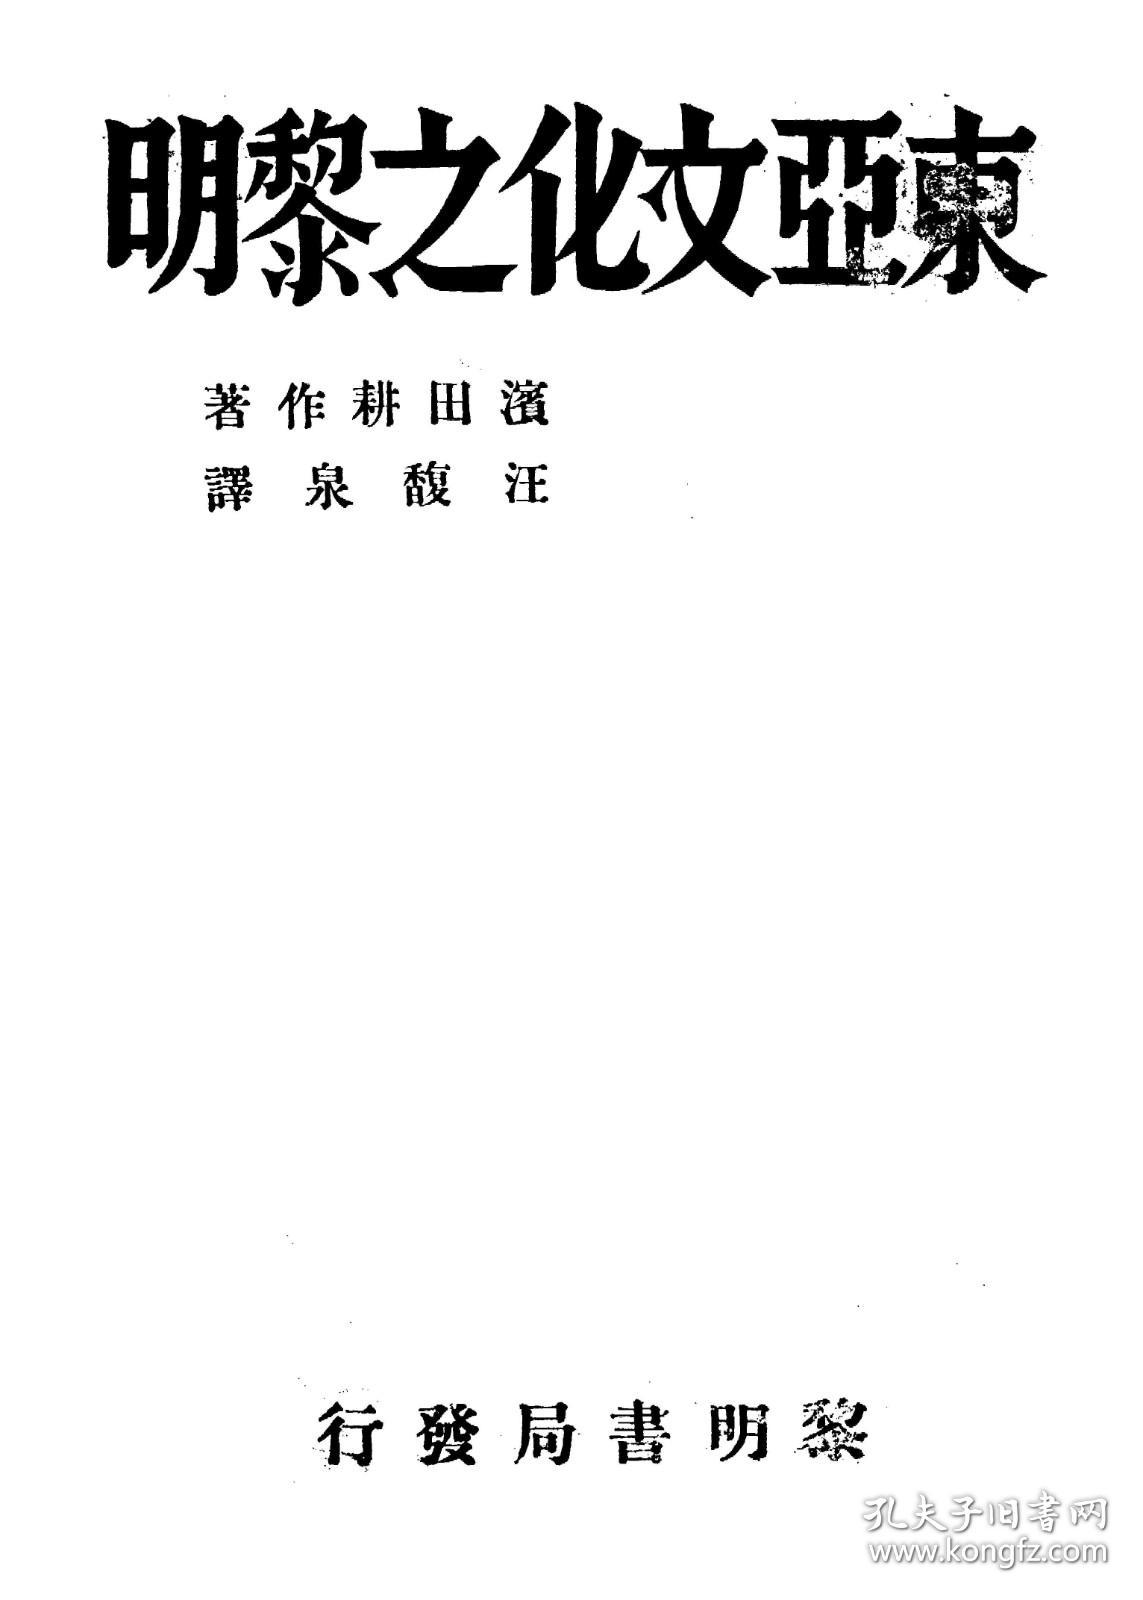 【提供资料信息服务】东亚文化之黎明   1932年